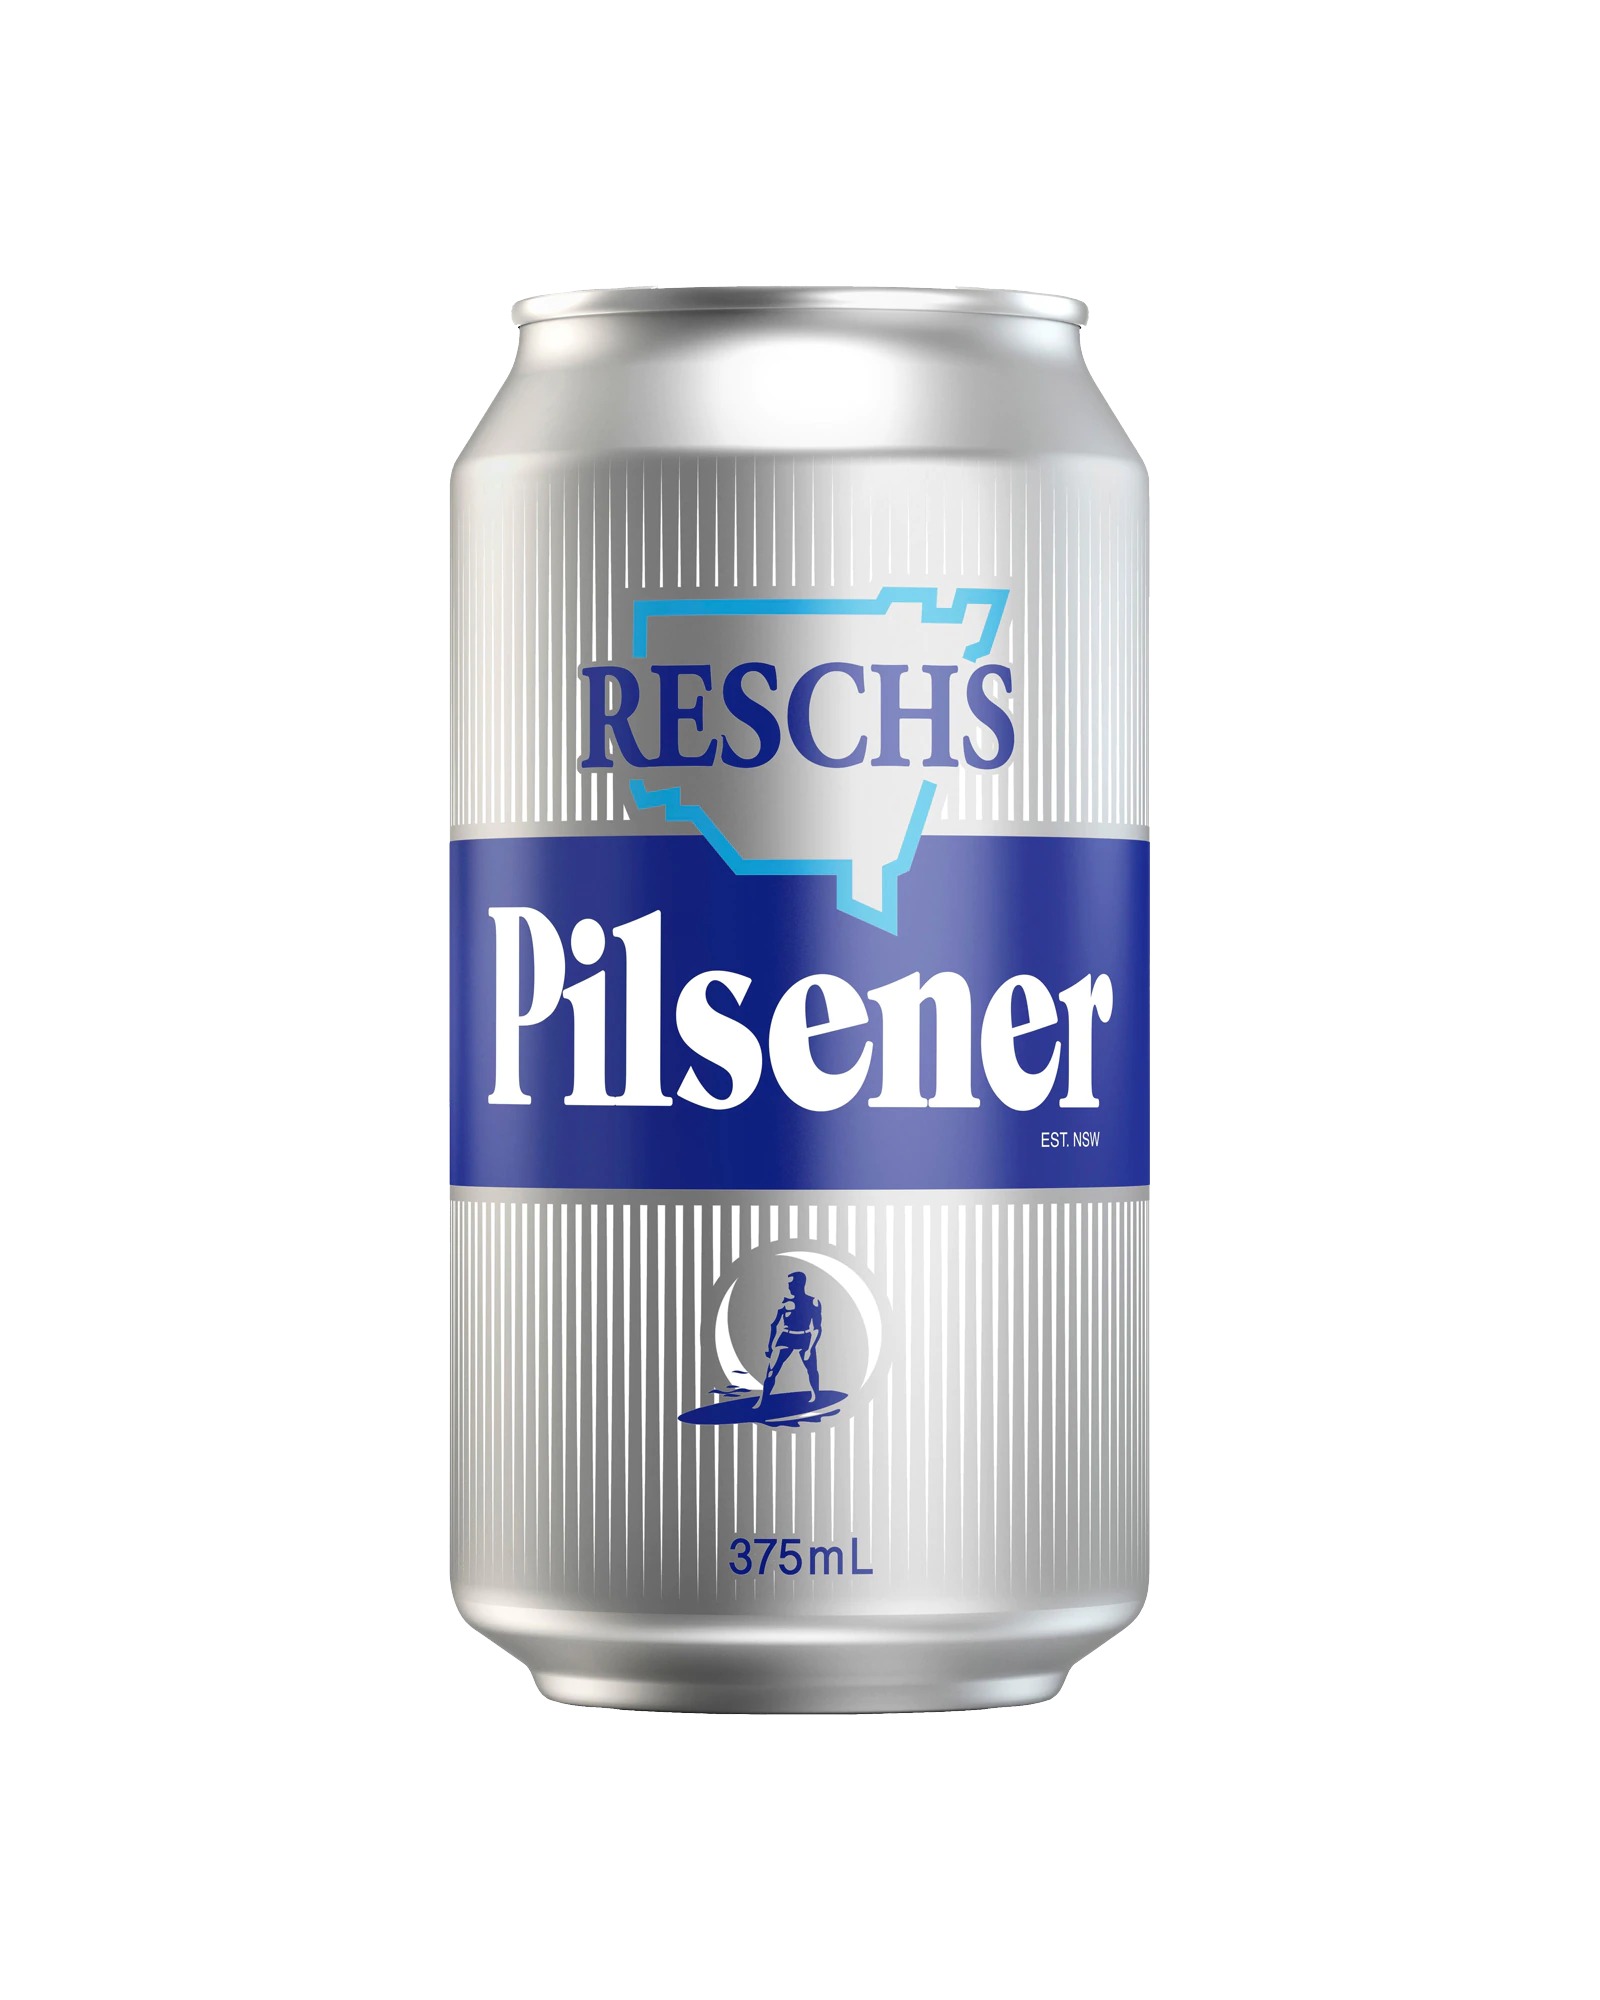 Reschs Pilsener Cans